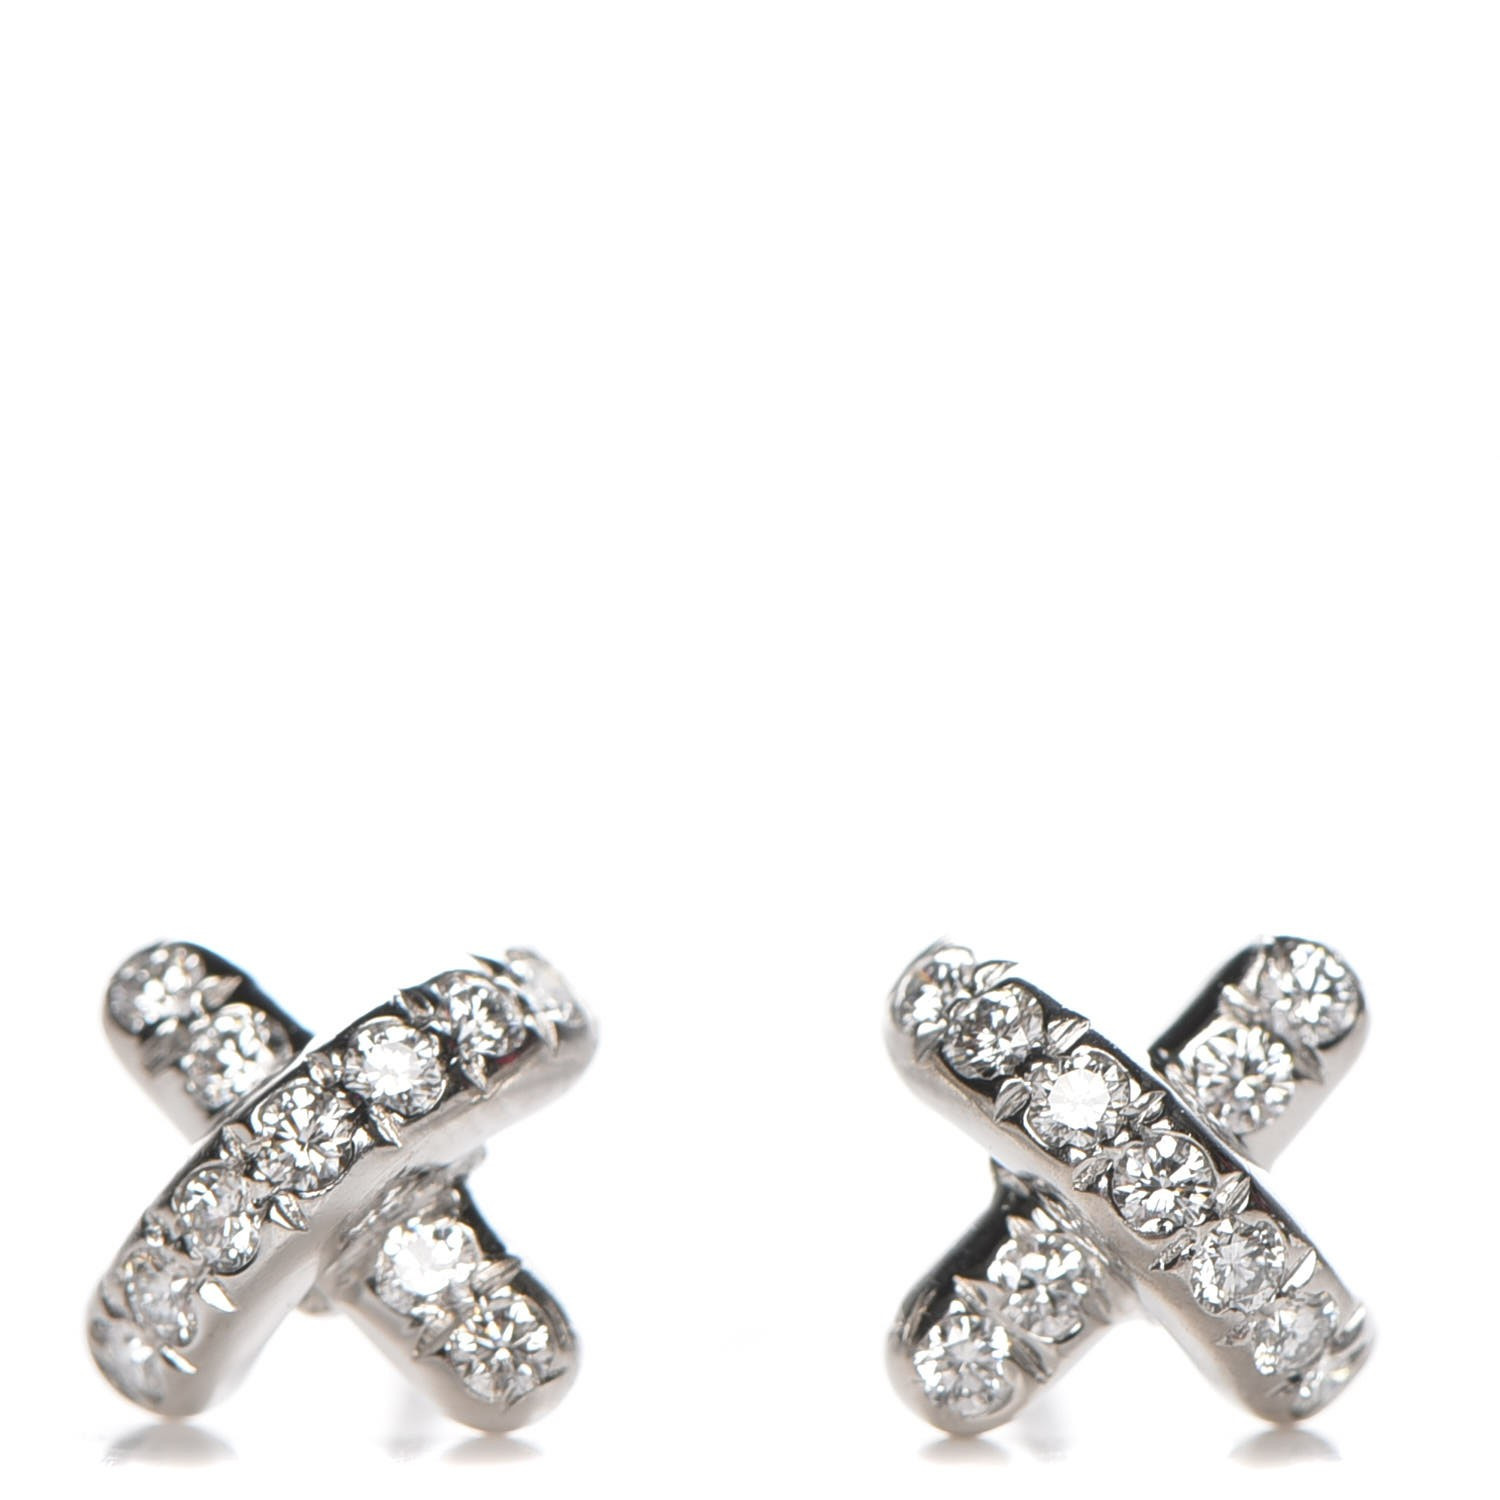 Tiffany Diamond Stud Earrings
 TIFFANY Platinum Diamond Cross Stitch Stud Earrings